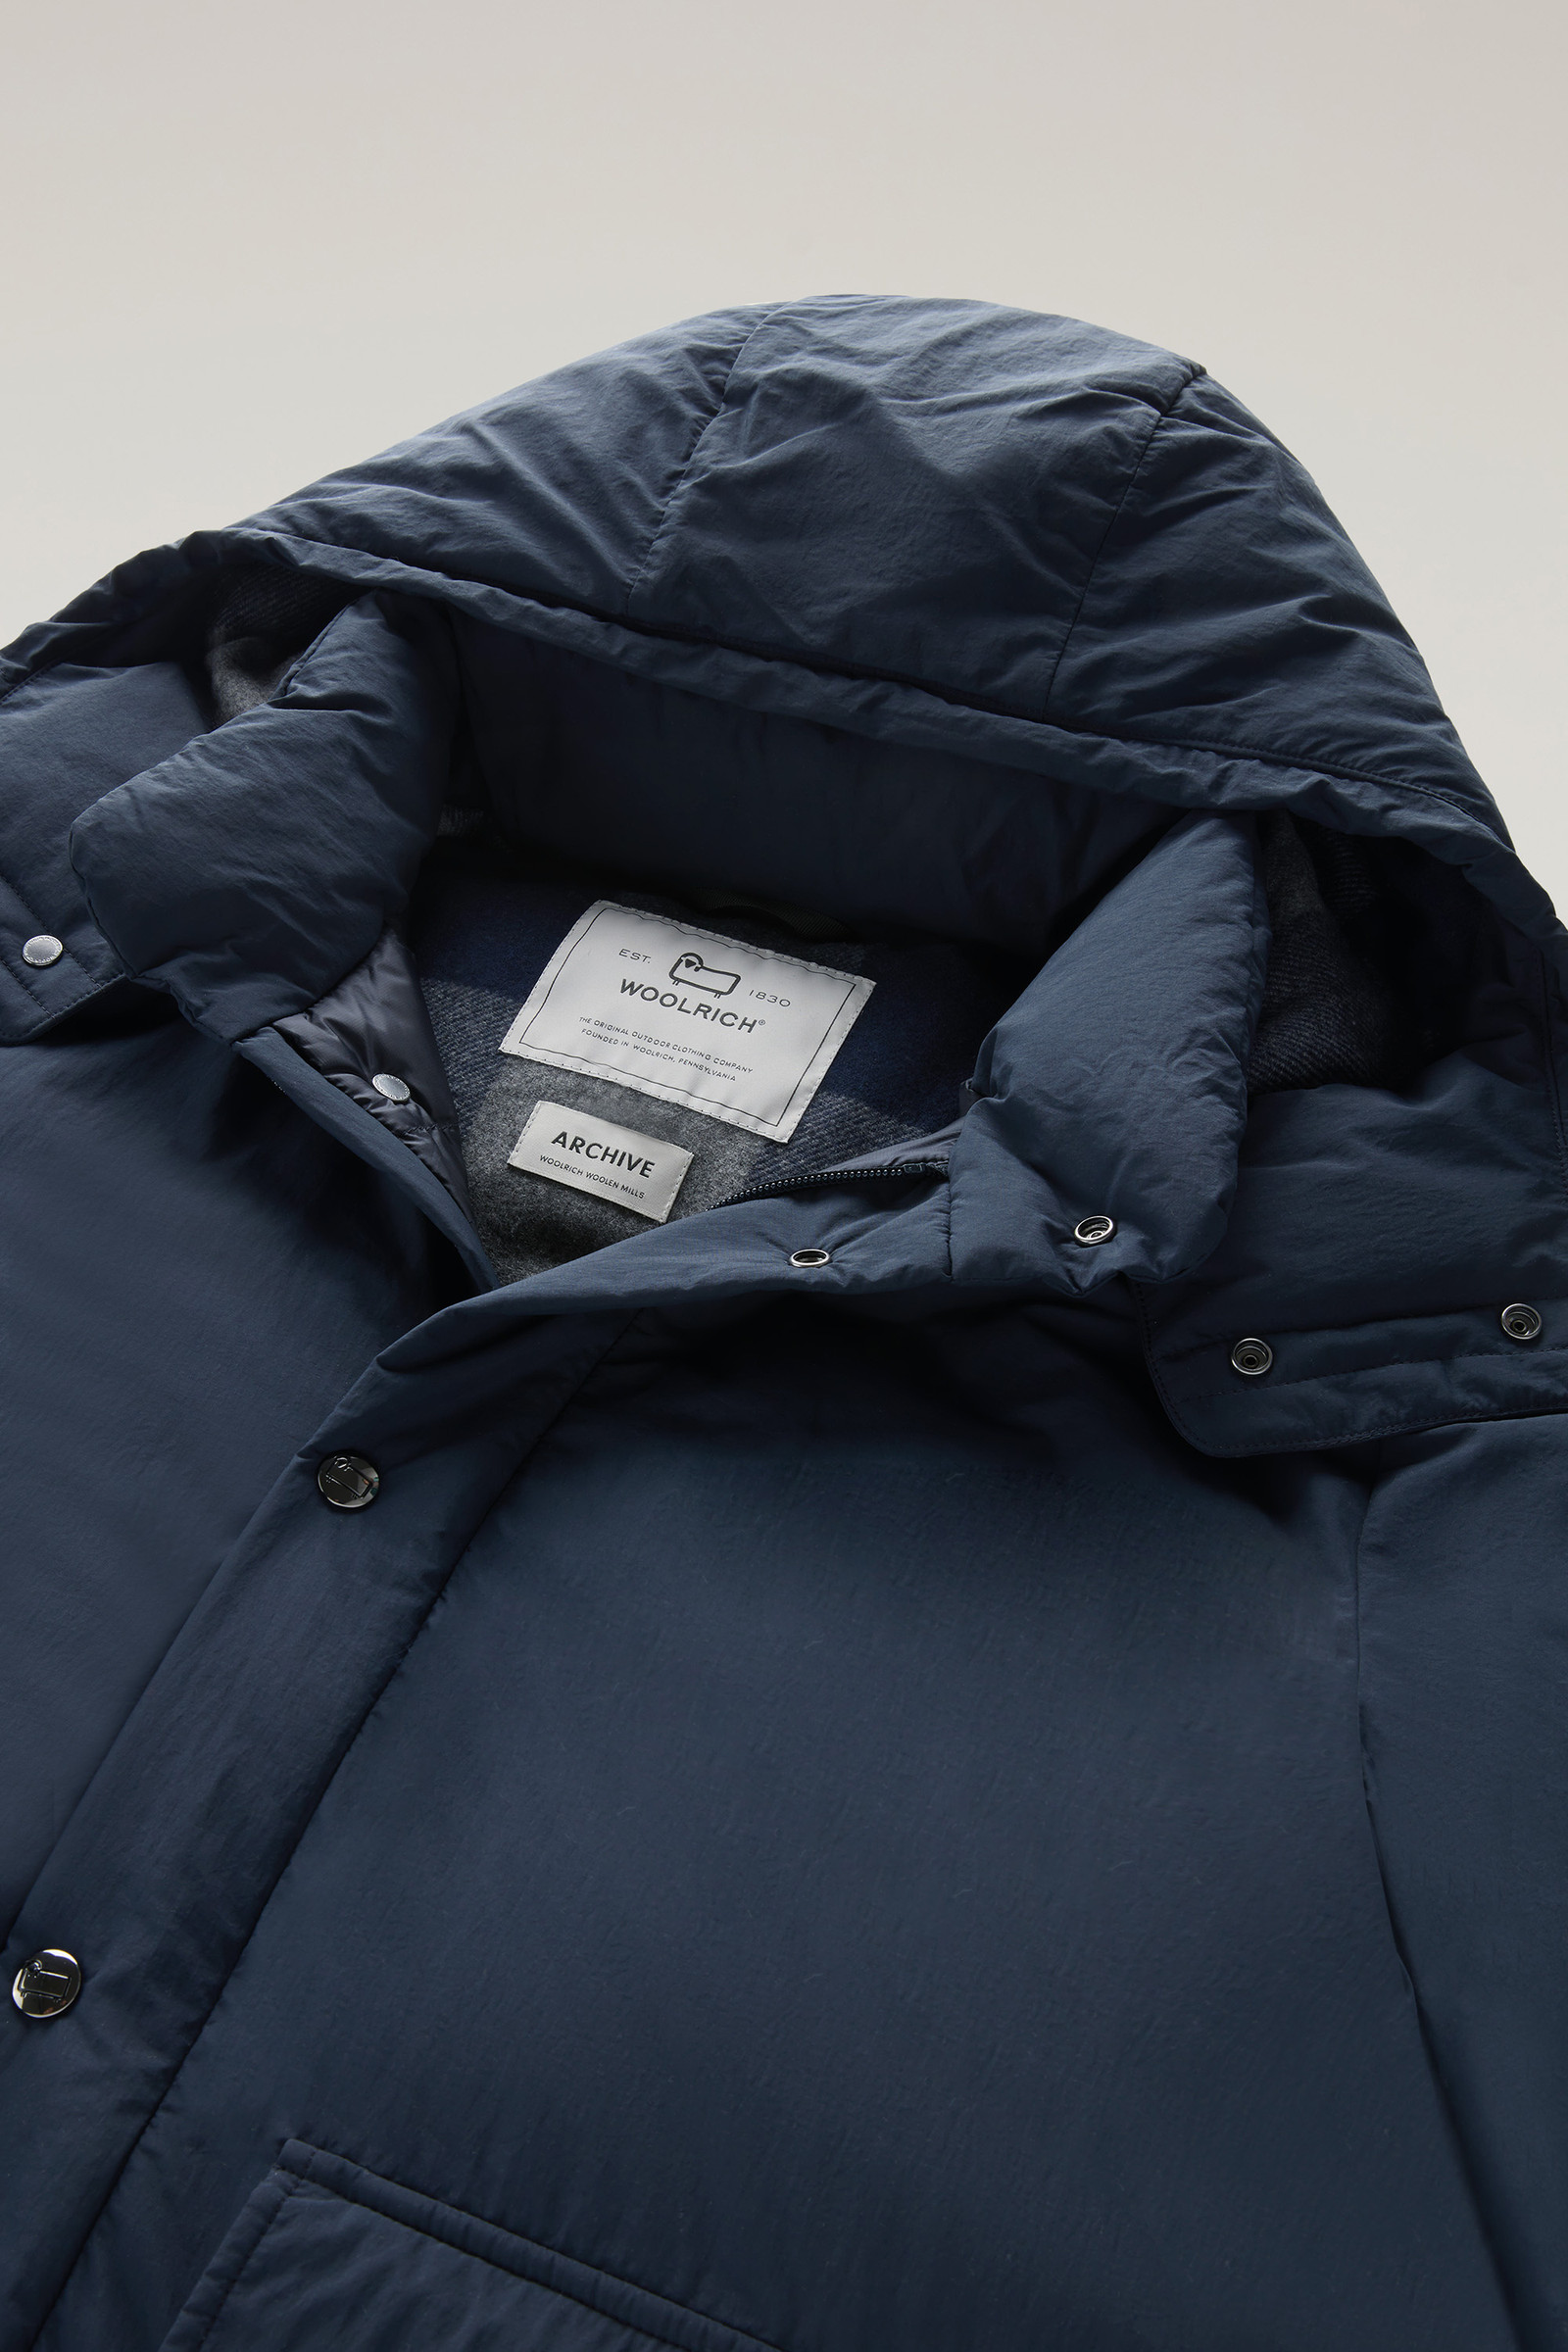 Men's Aleutian Jacket in Taslan Nylon Blue | Woolrich USA